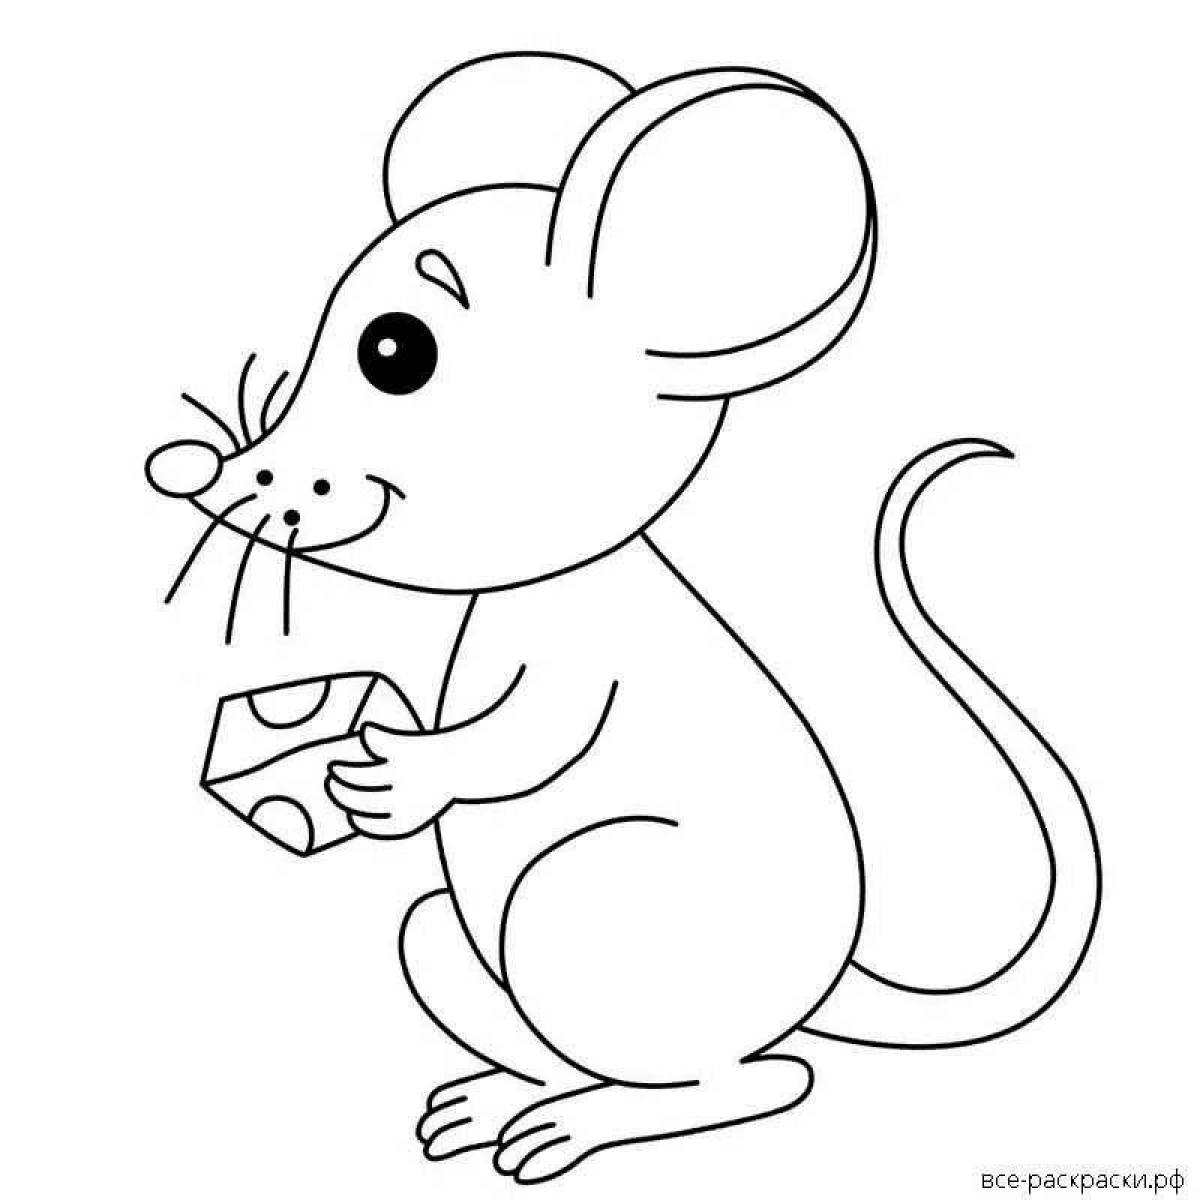 Раскраска мышь распечатать. Мышка норушка раскраска для малышей. Мышка Теремок раскраска для детей. Мышь из сказки Теремок раскраска для детей. Мышка норушка раскраска Теремок.